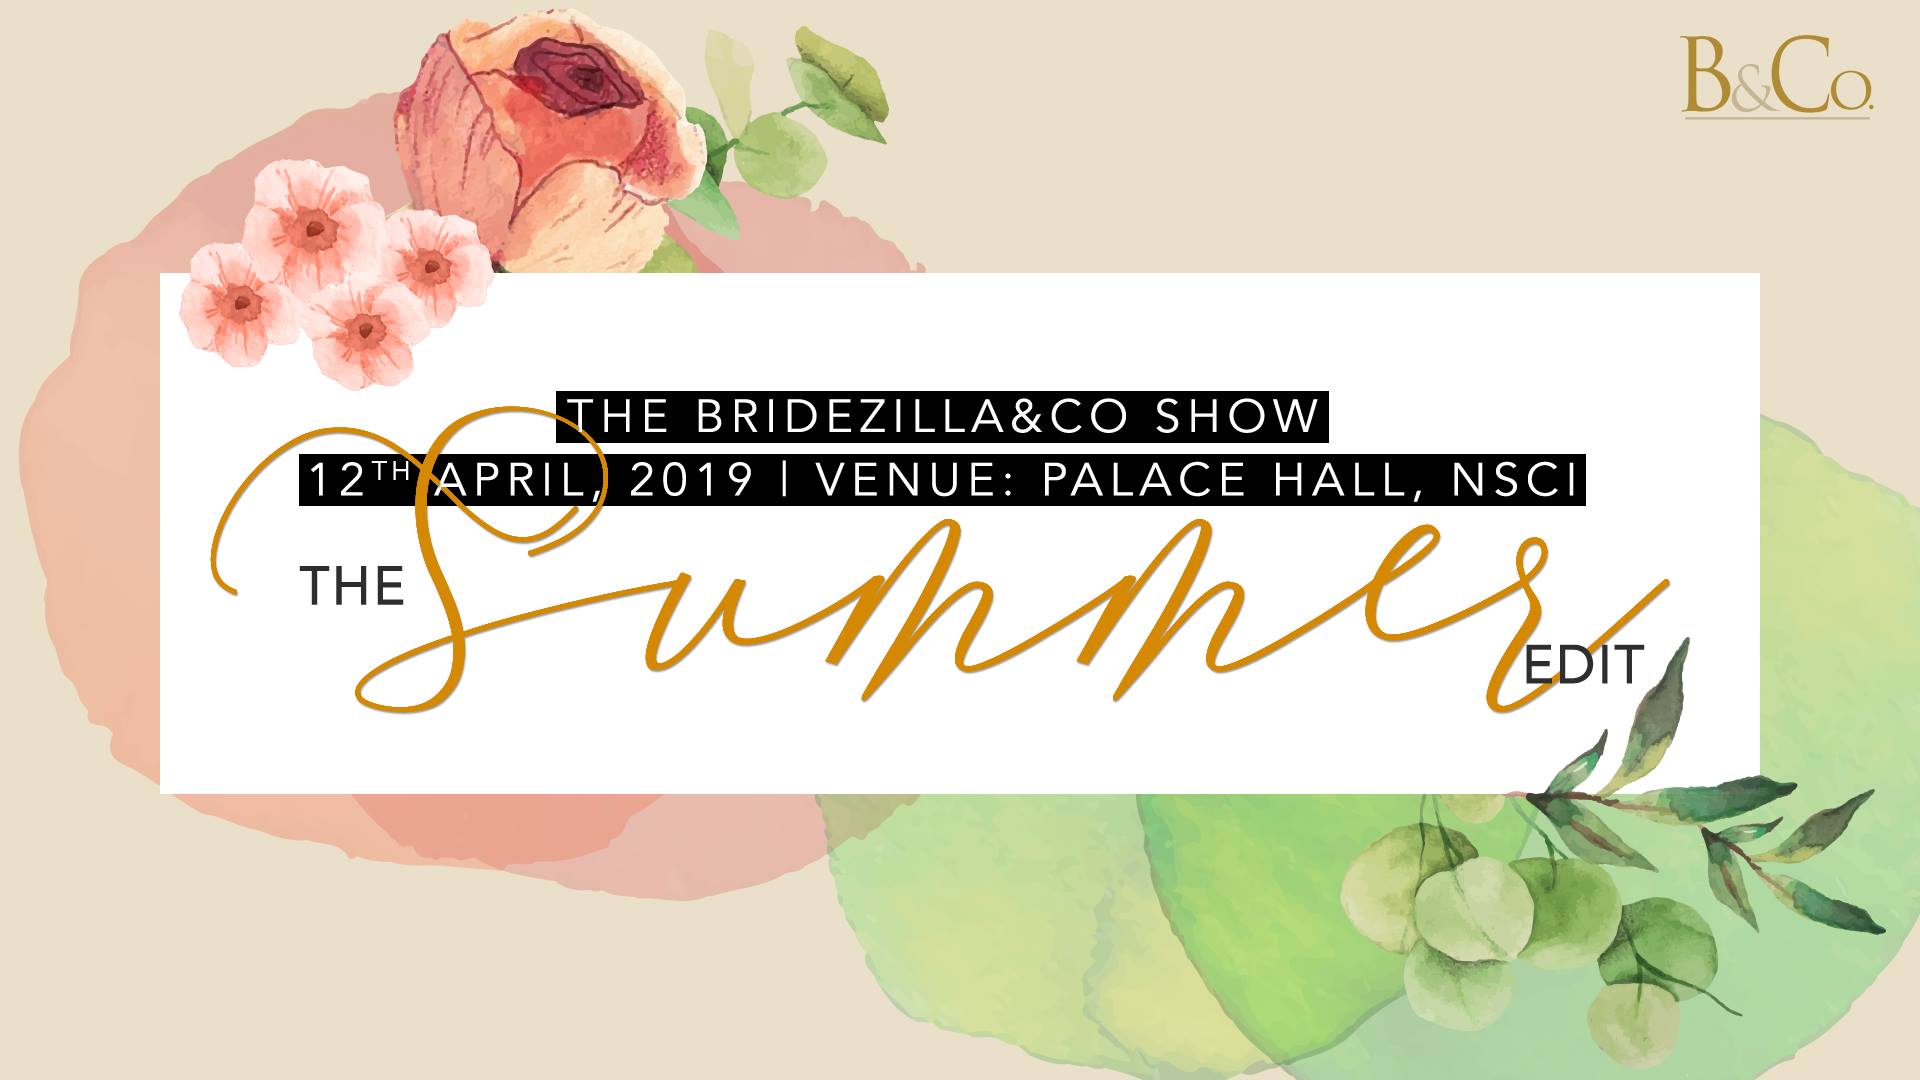 The Bridezilla&Co Show - Summer Edit, Mumbai, Maharashtra, India